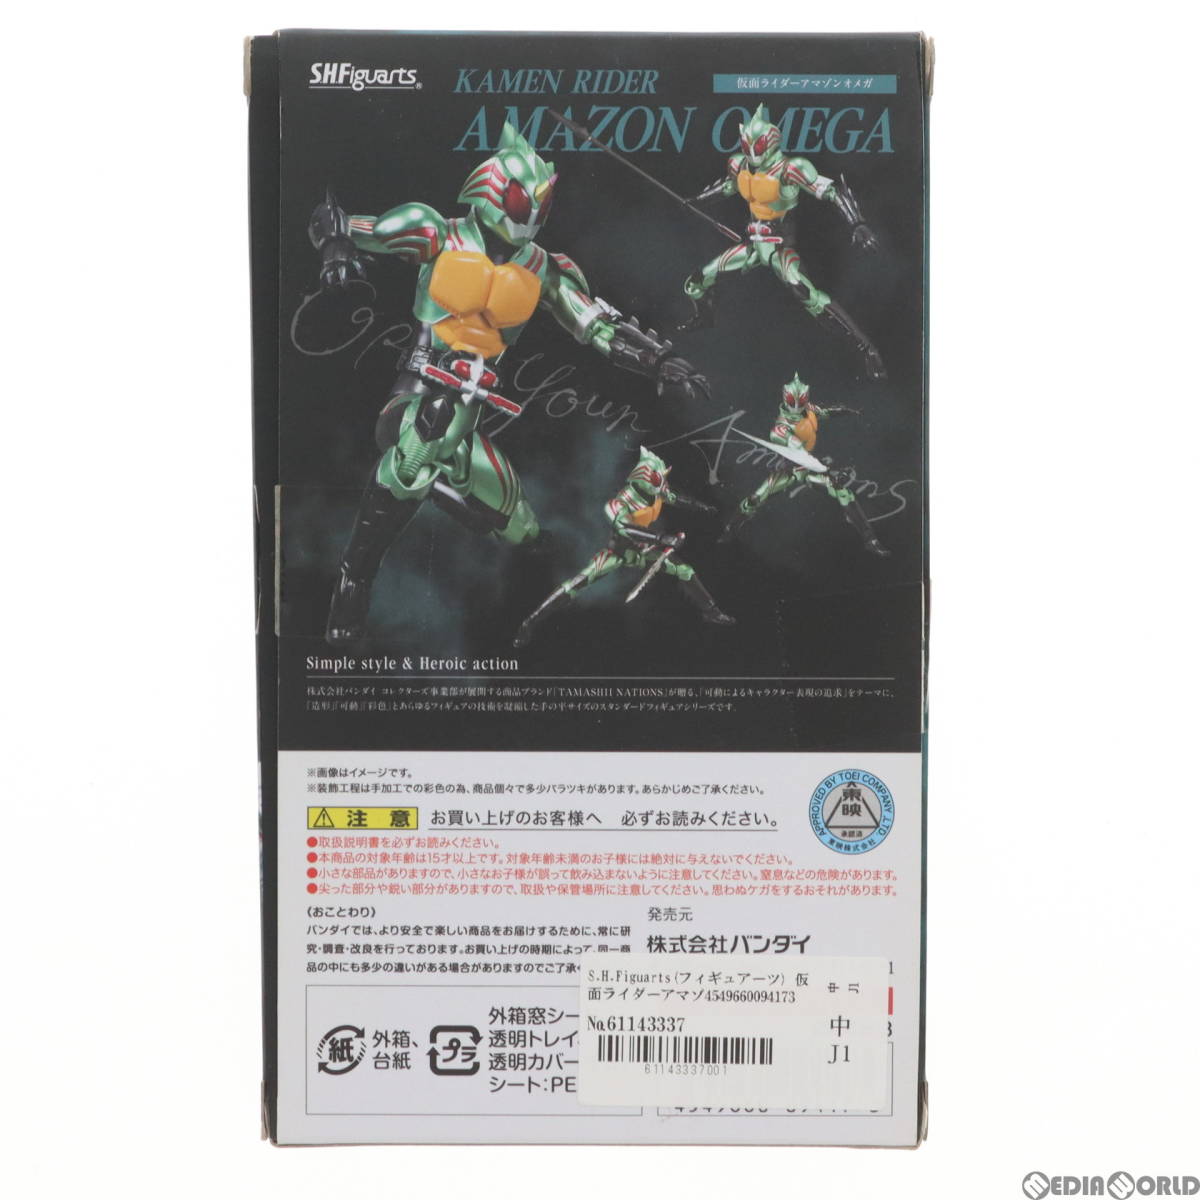 [ б/у ][FIG]S.H.Figuarts( figuarts ) Kamen Rider Amazon Omega Kamen Rider Amazon z конечный продукт передвижной фигурка Bandai (6114333